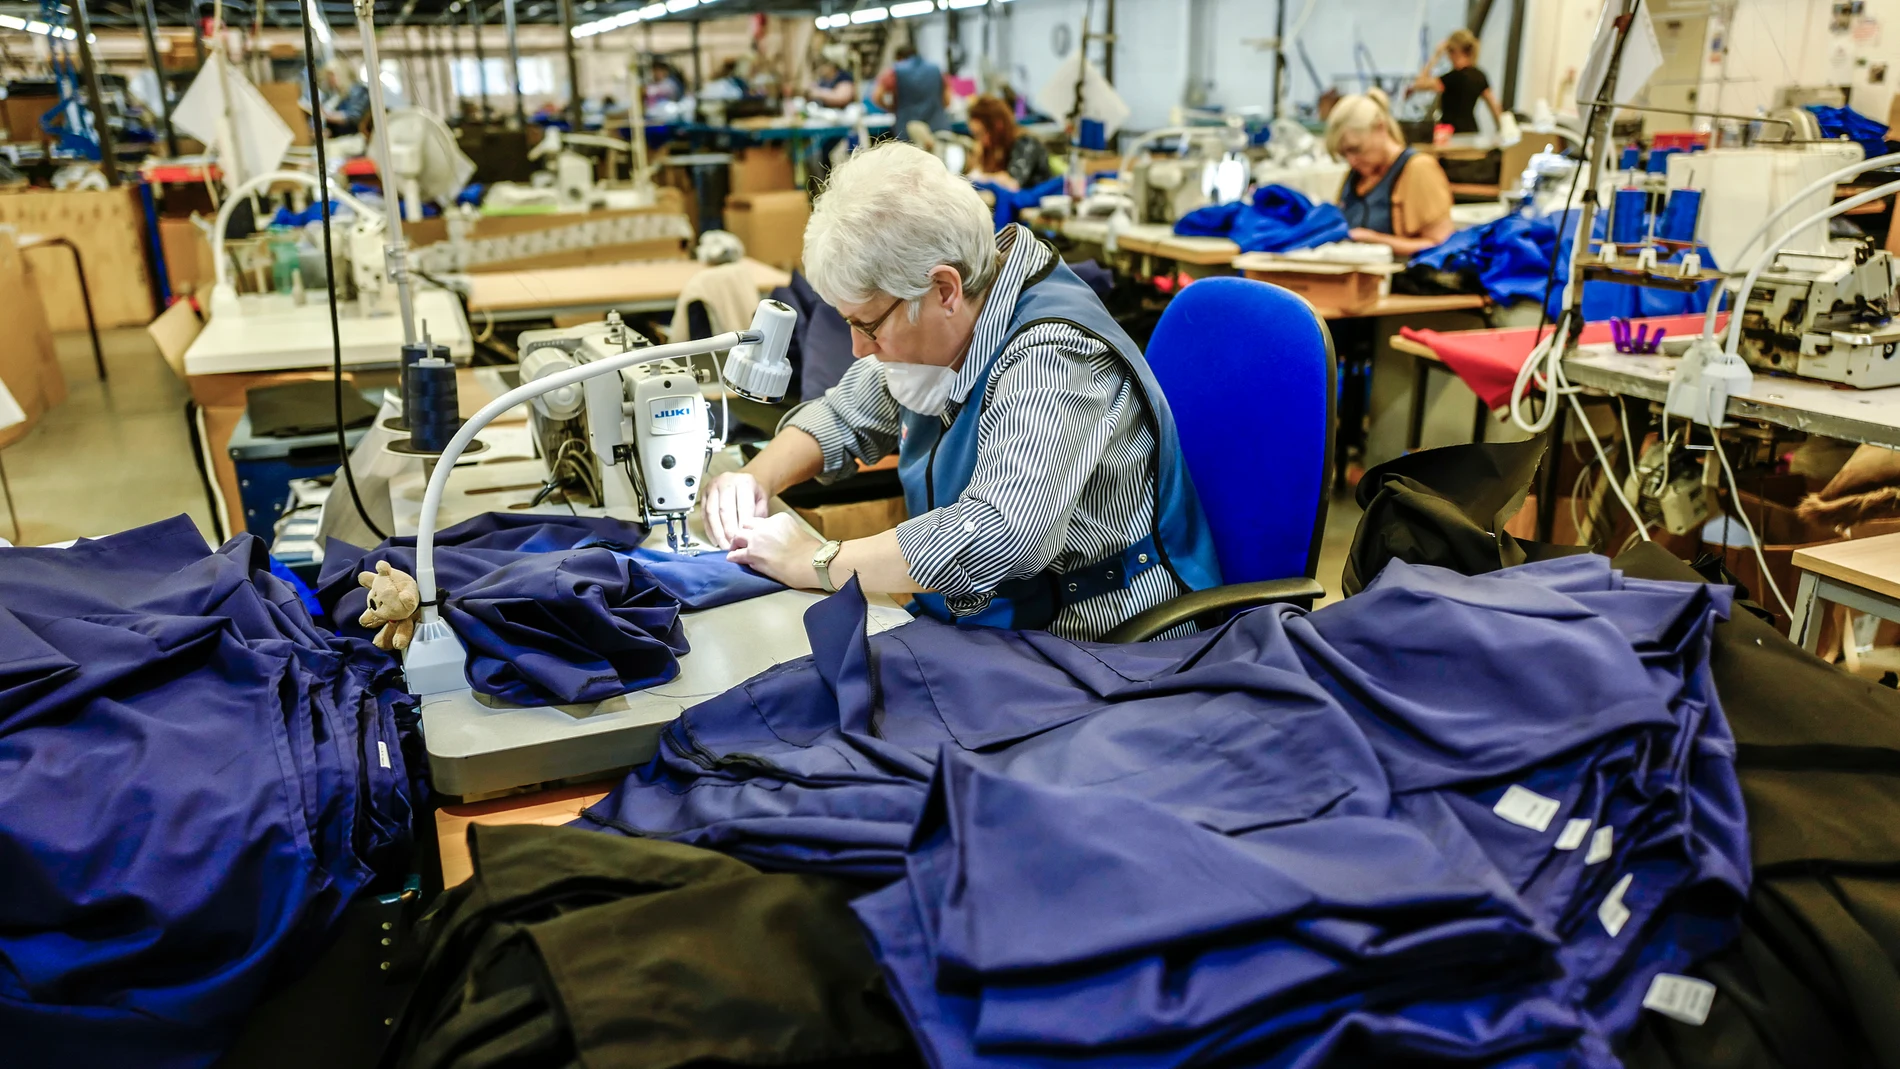 Gracioso amplio crecer La pandemia 'resucita' la industria textil en España: "No damos abasto,  hemos dicho que no a muchos clientes"